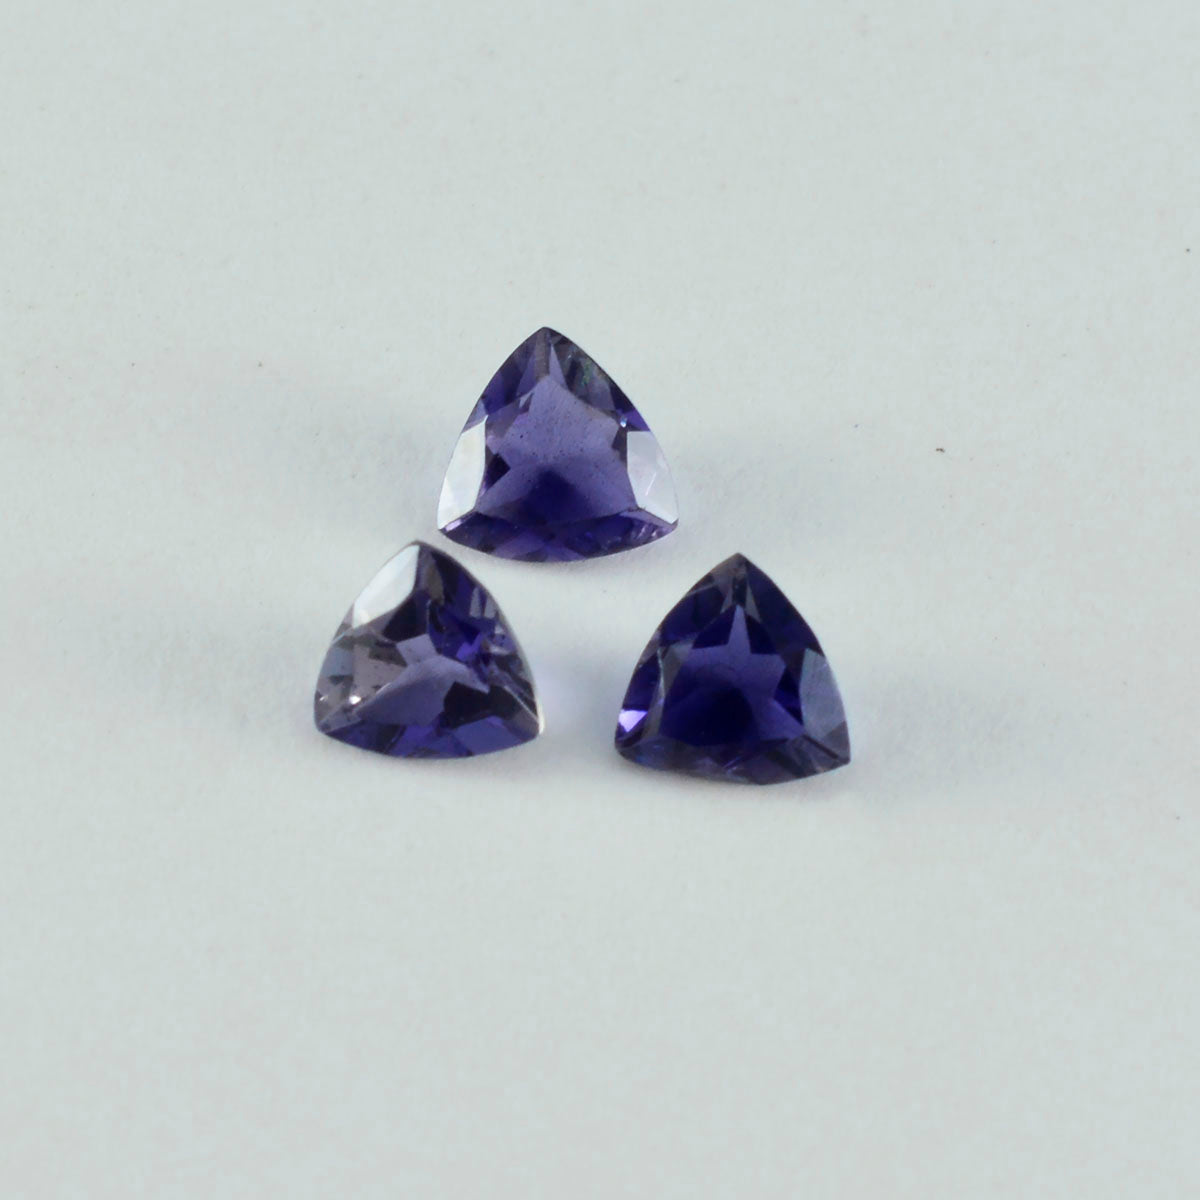 riyogems 1 шт. синий иолит ограненный 10x10 мм форма триллиона красивый качественный камень